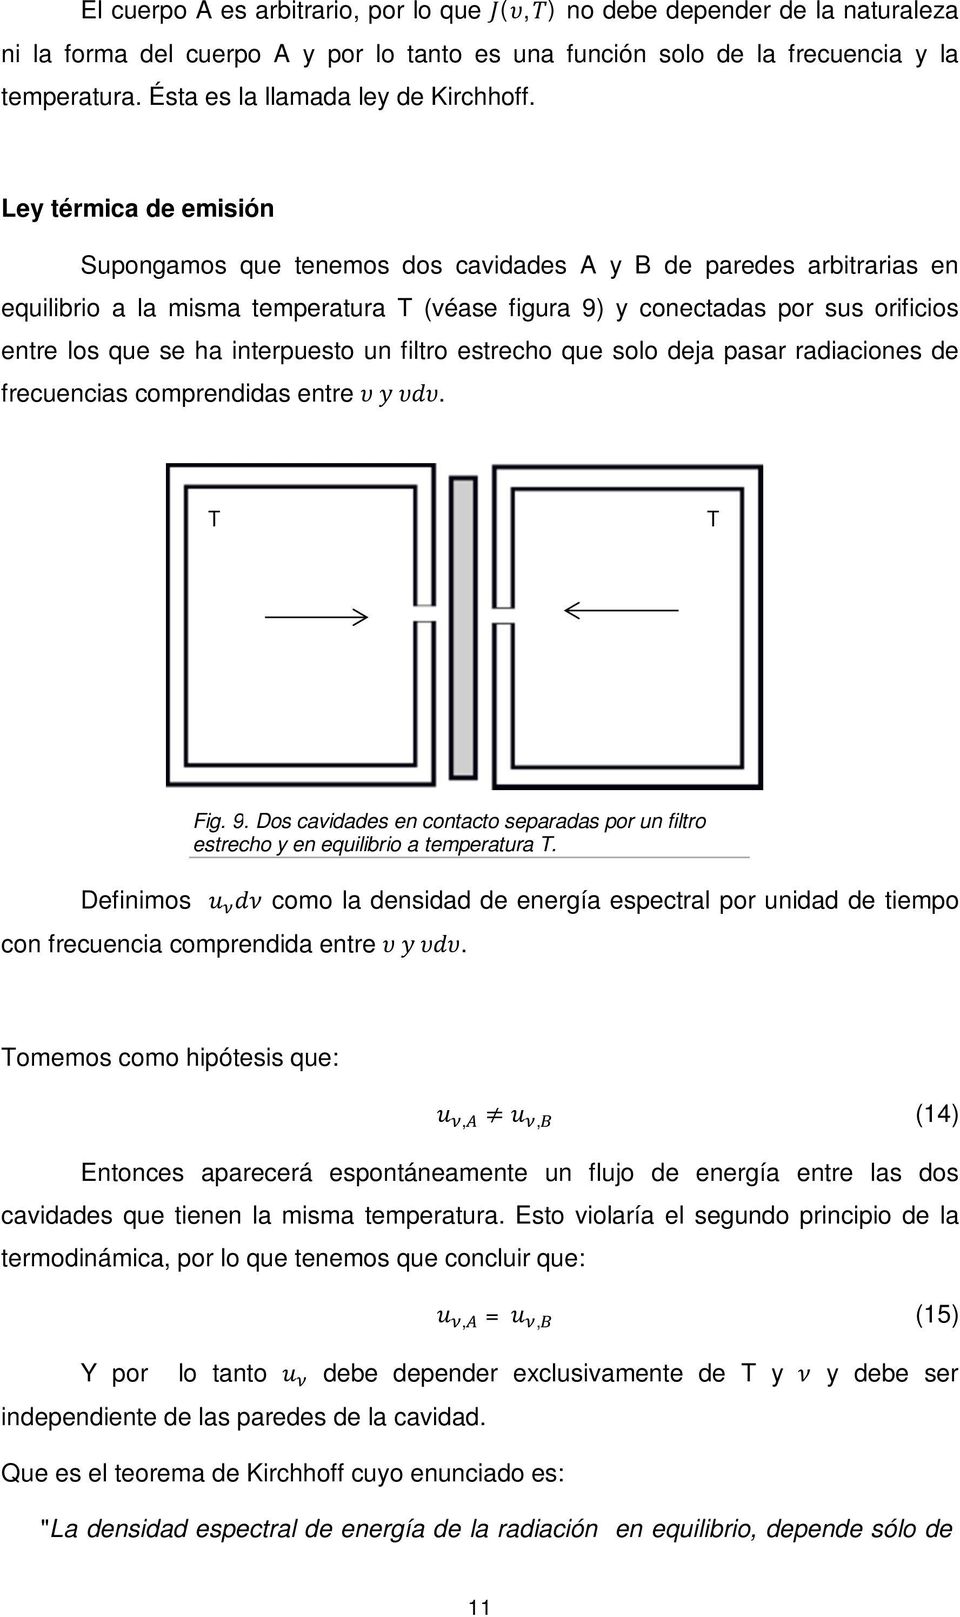 Ley térmica de emisión Supongamos que tenemos dos cavidades A y B de paredes arbitrarias en equilibrio a la misma temperatura T (véase figura 9) y conectadas por sus orificios entre los que se ha